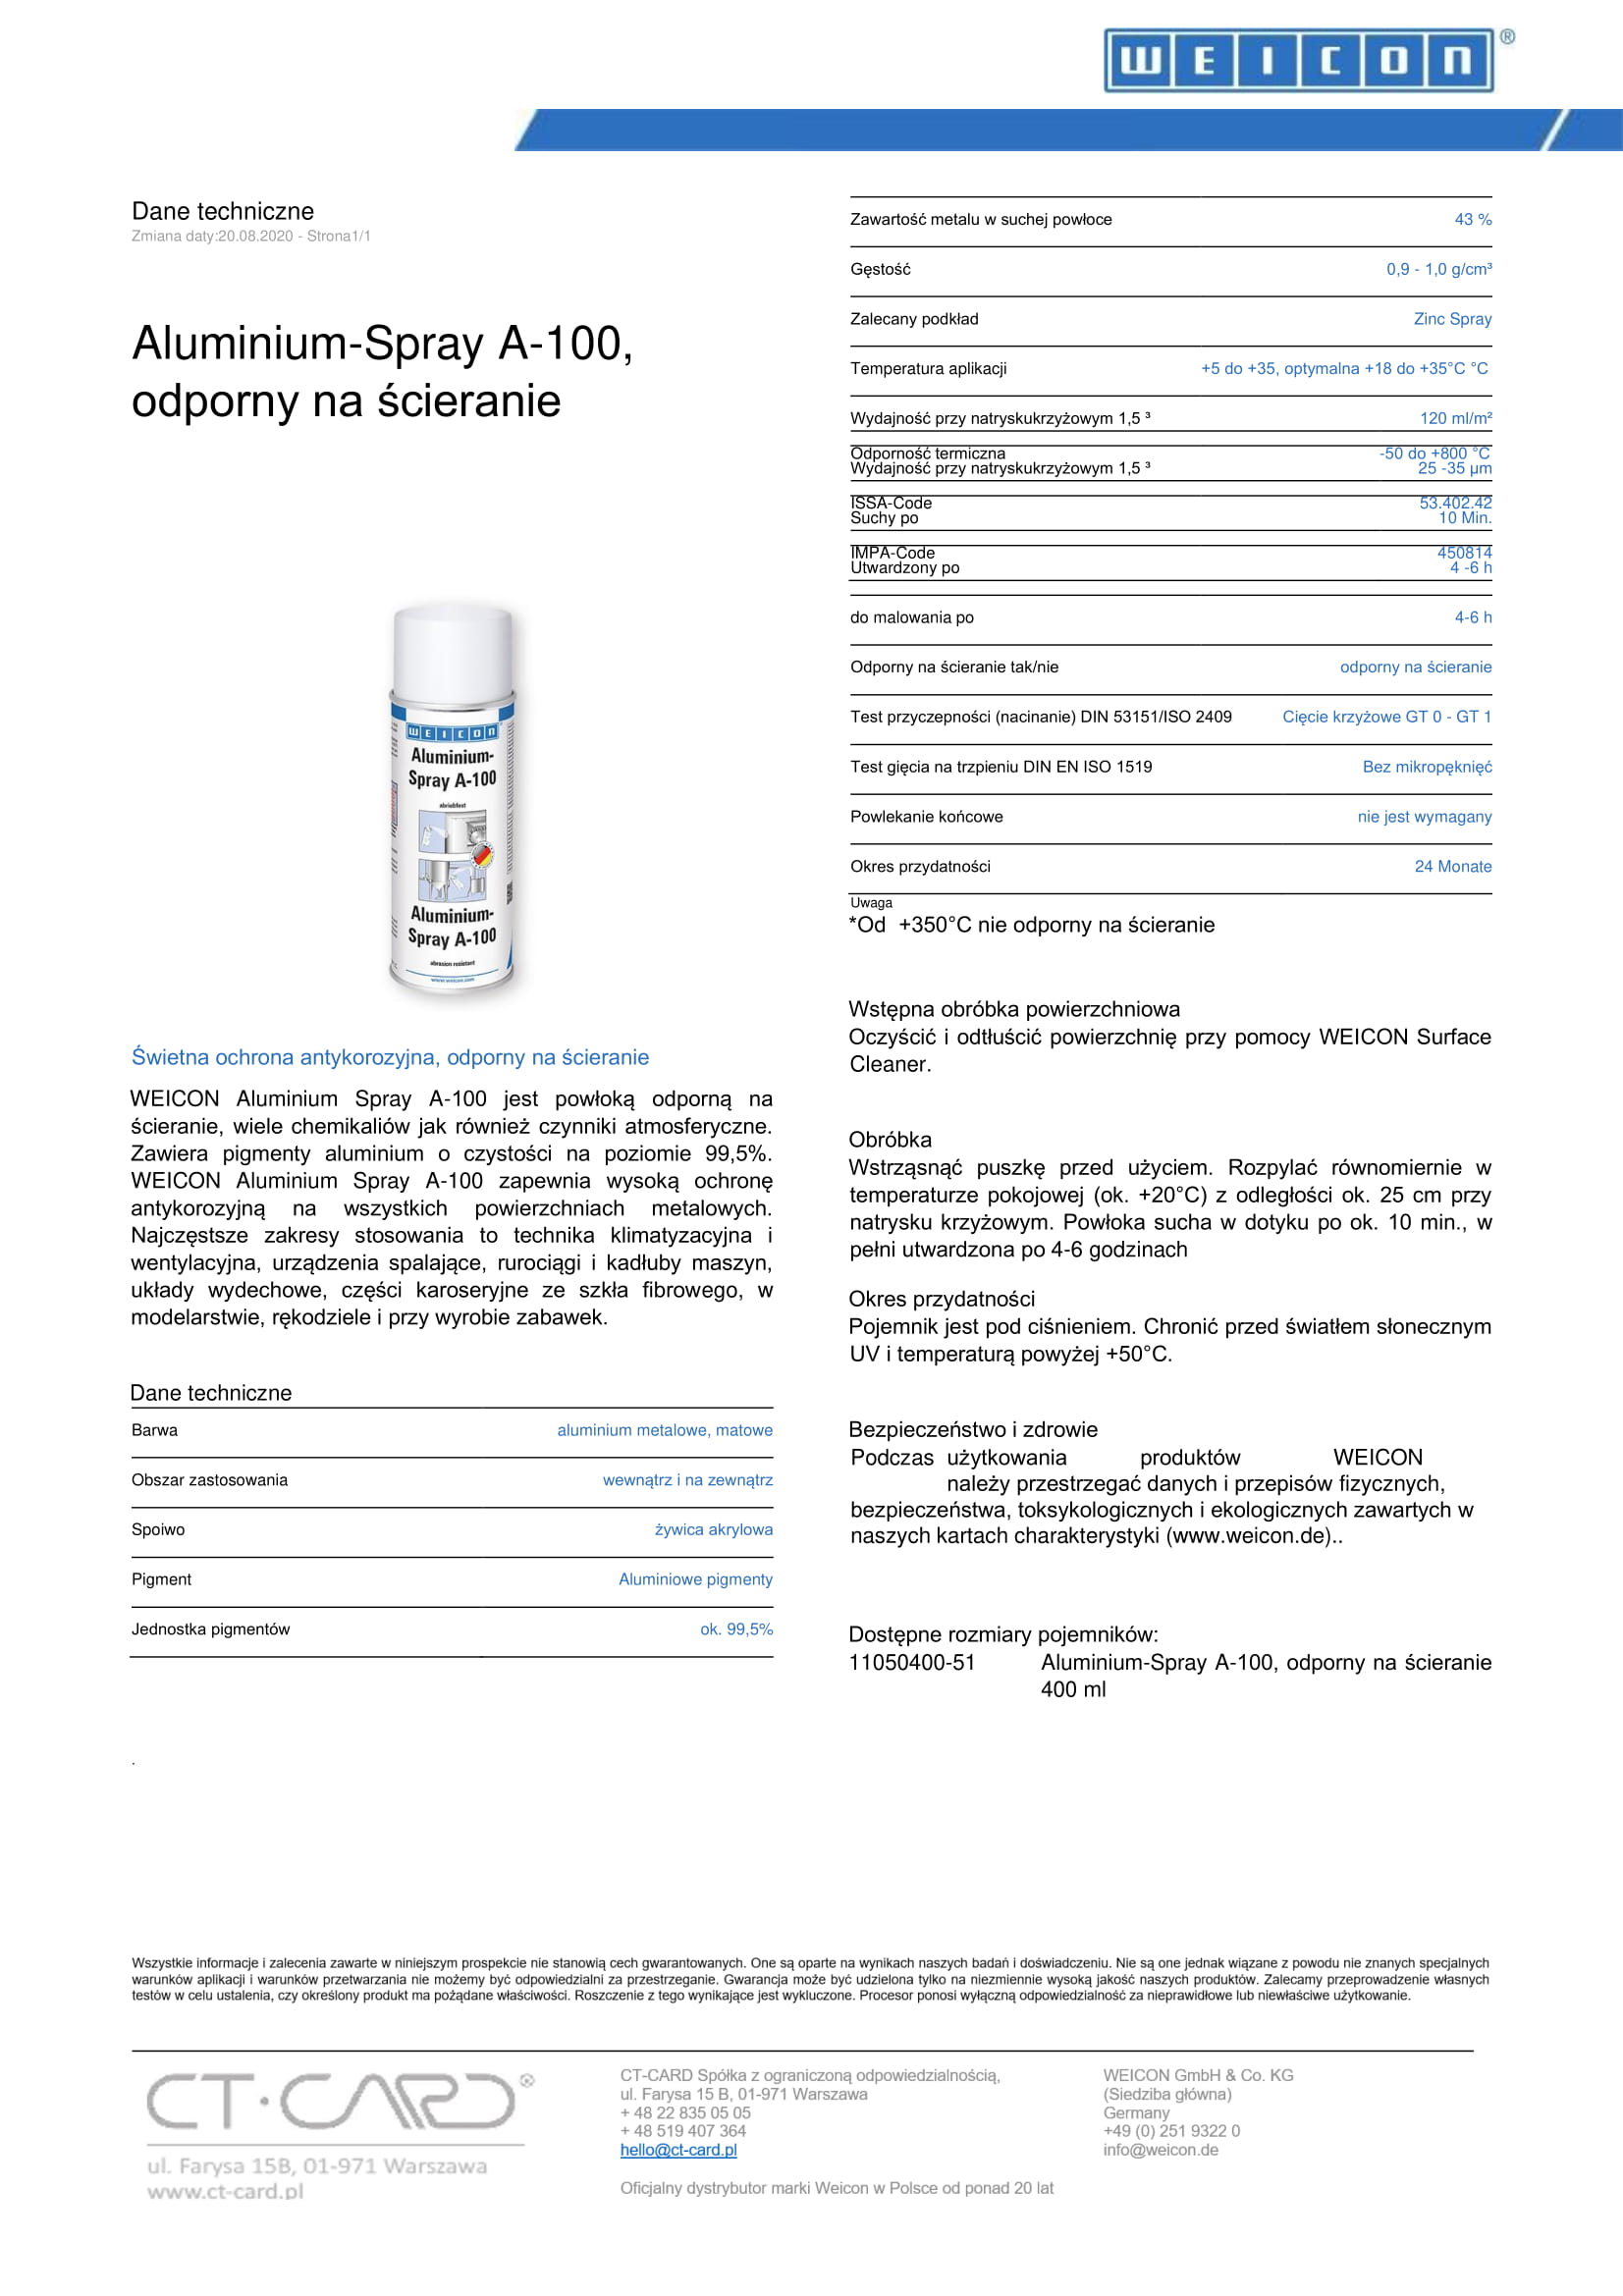 TDS_11050400_PL_Aluminium-Spray_A-100__odporny_na__cieranie-1